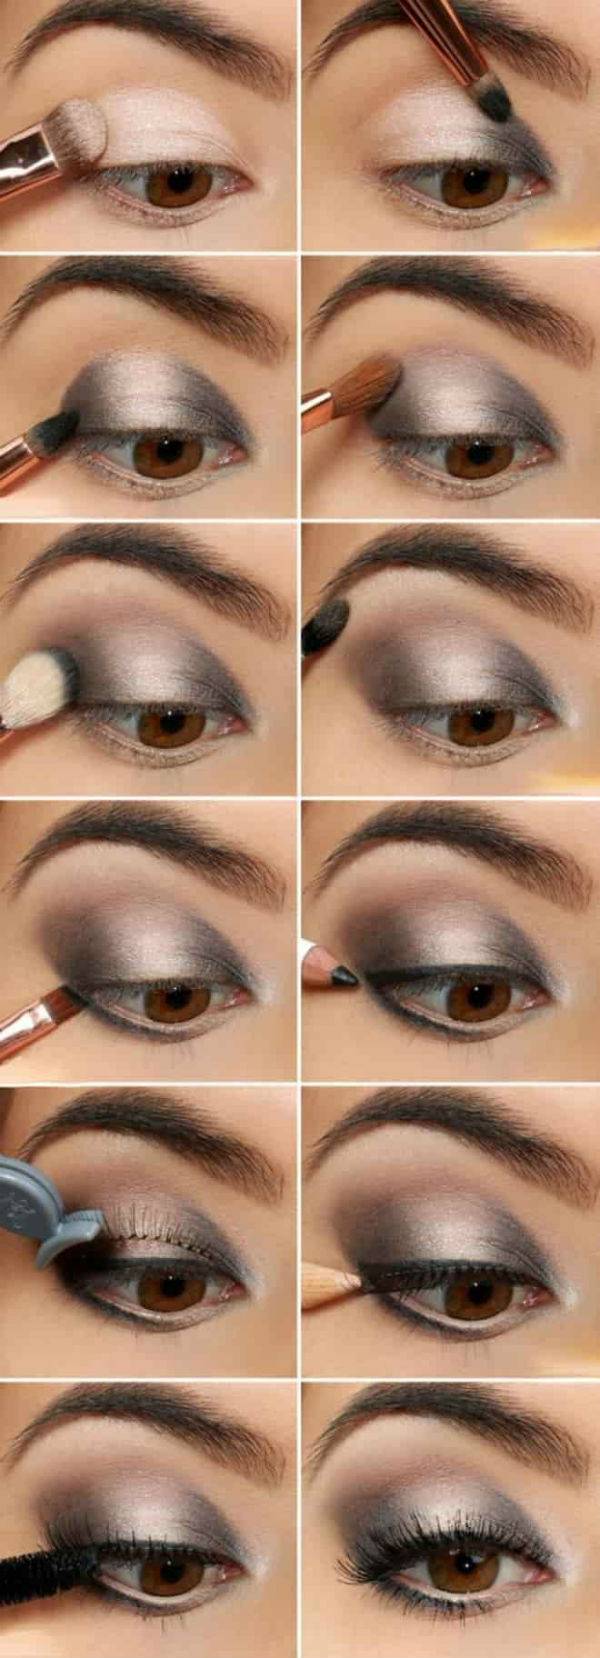 Как сделать макияж смоки айс (smoky eyes) — пошаговое выполнение с фото и видео